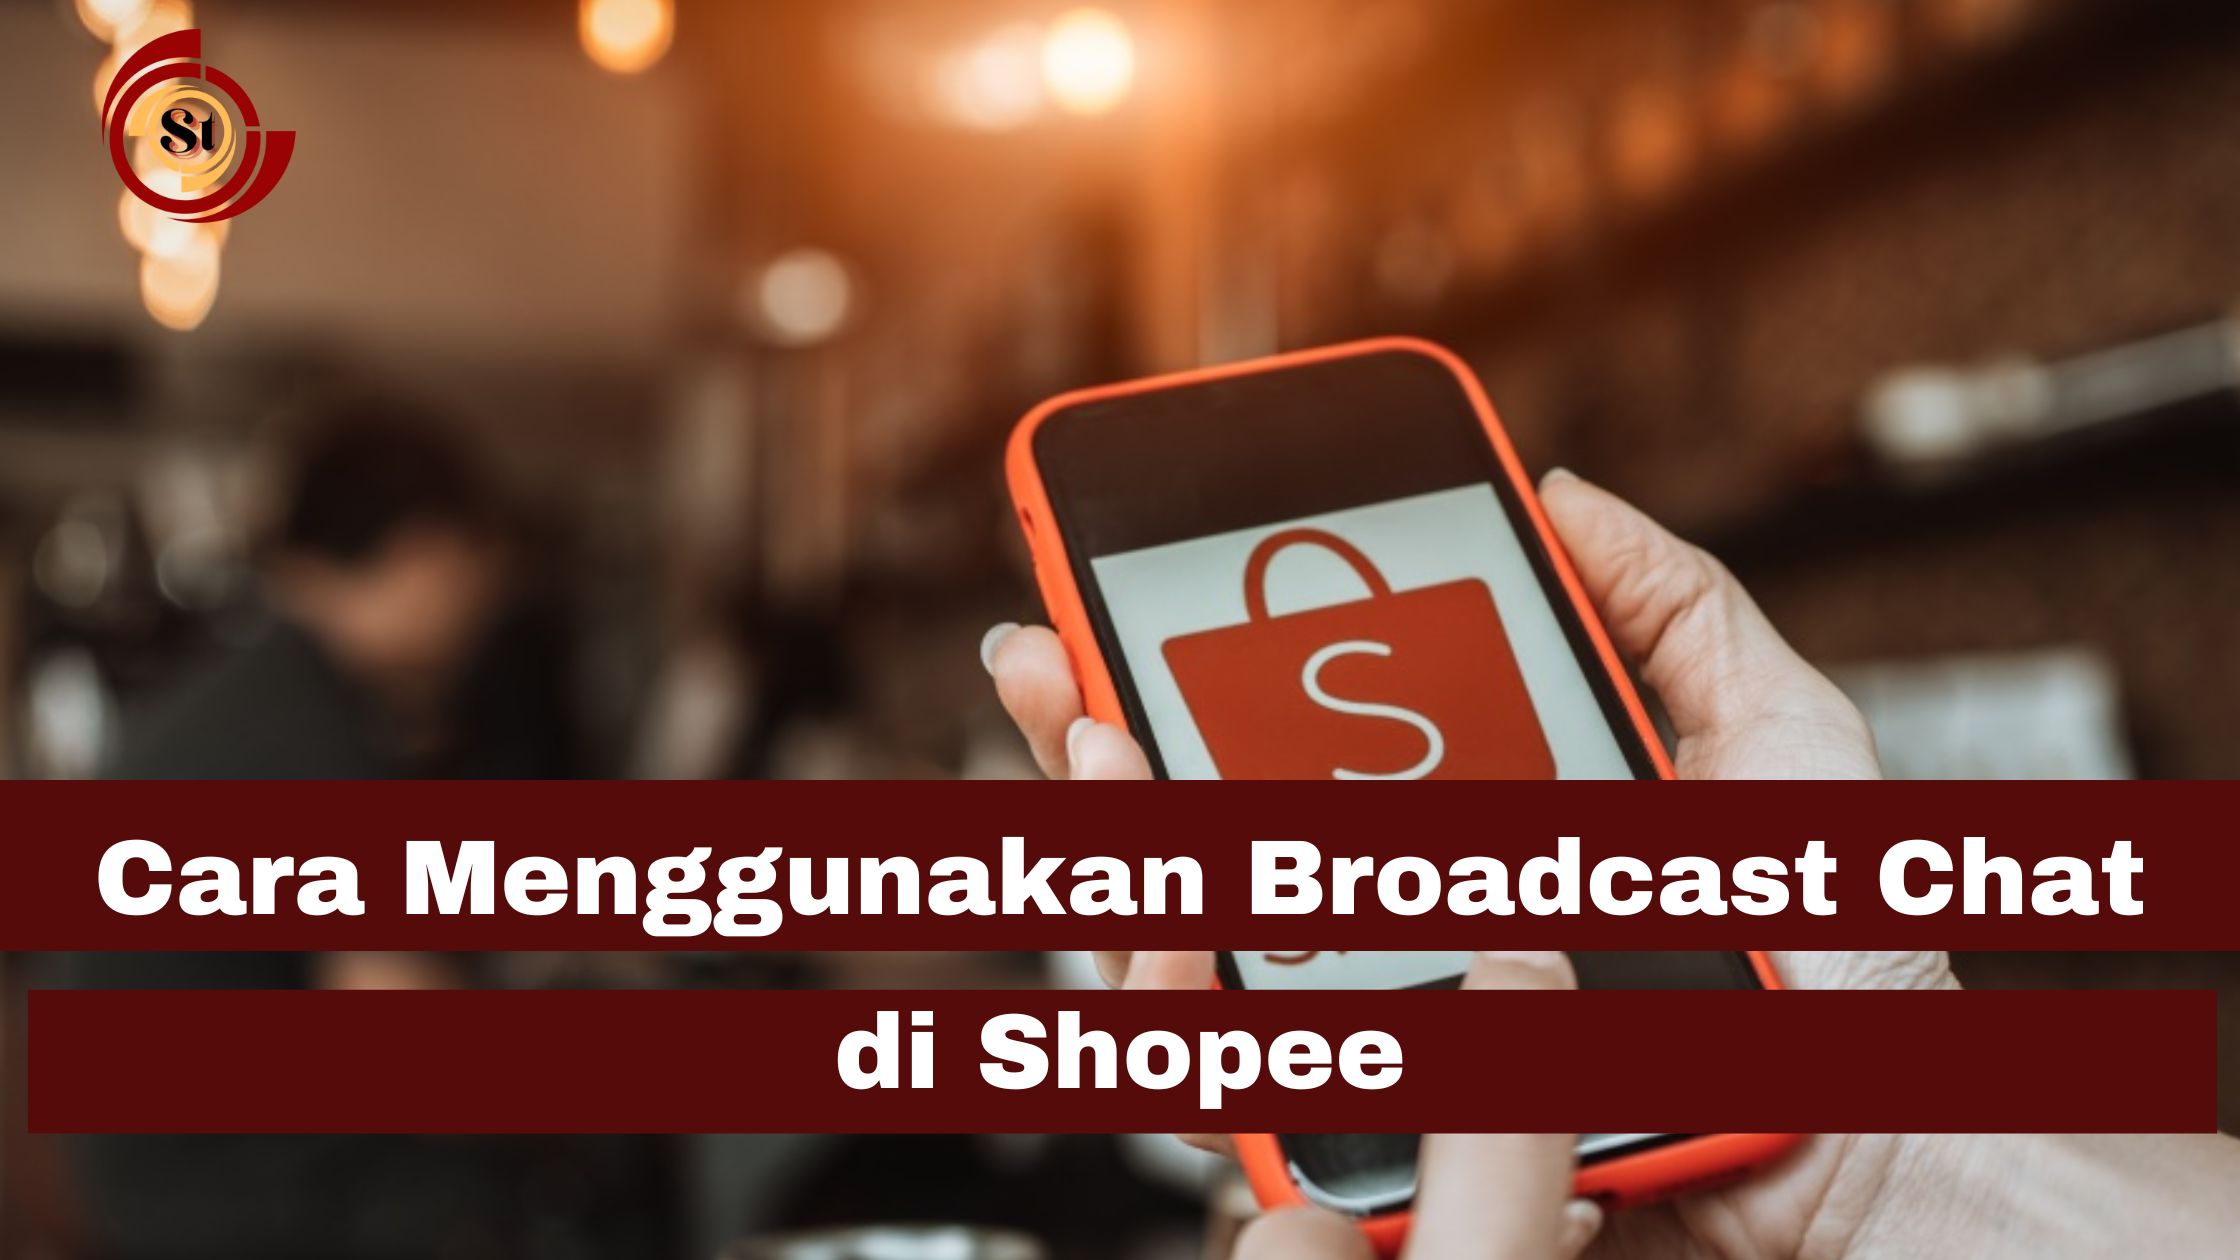 Cara Menggunakan Broadcast Chat di Shopee